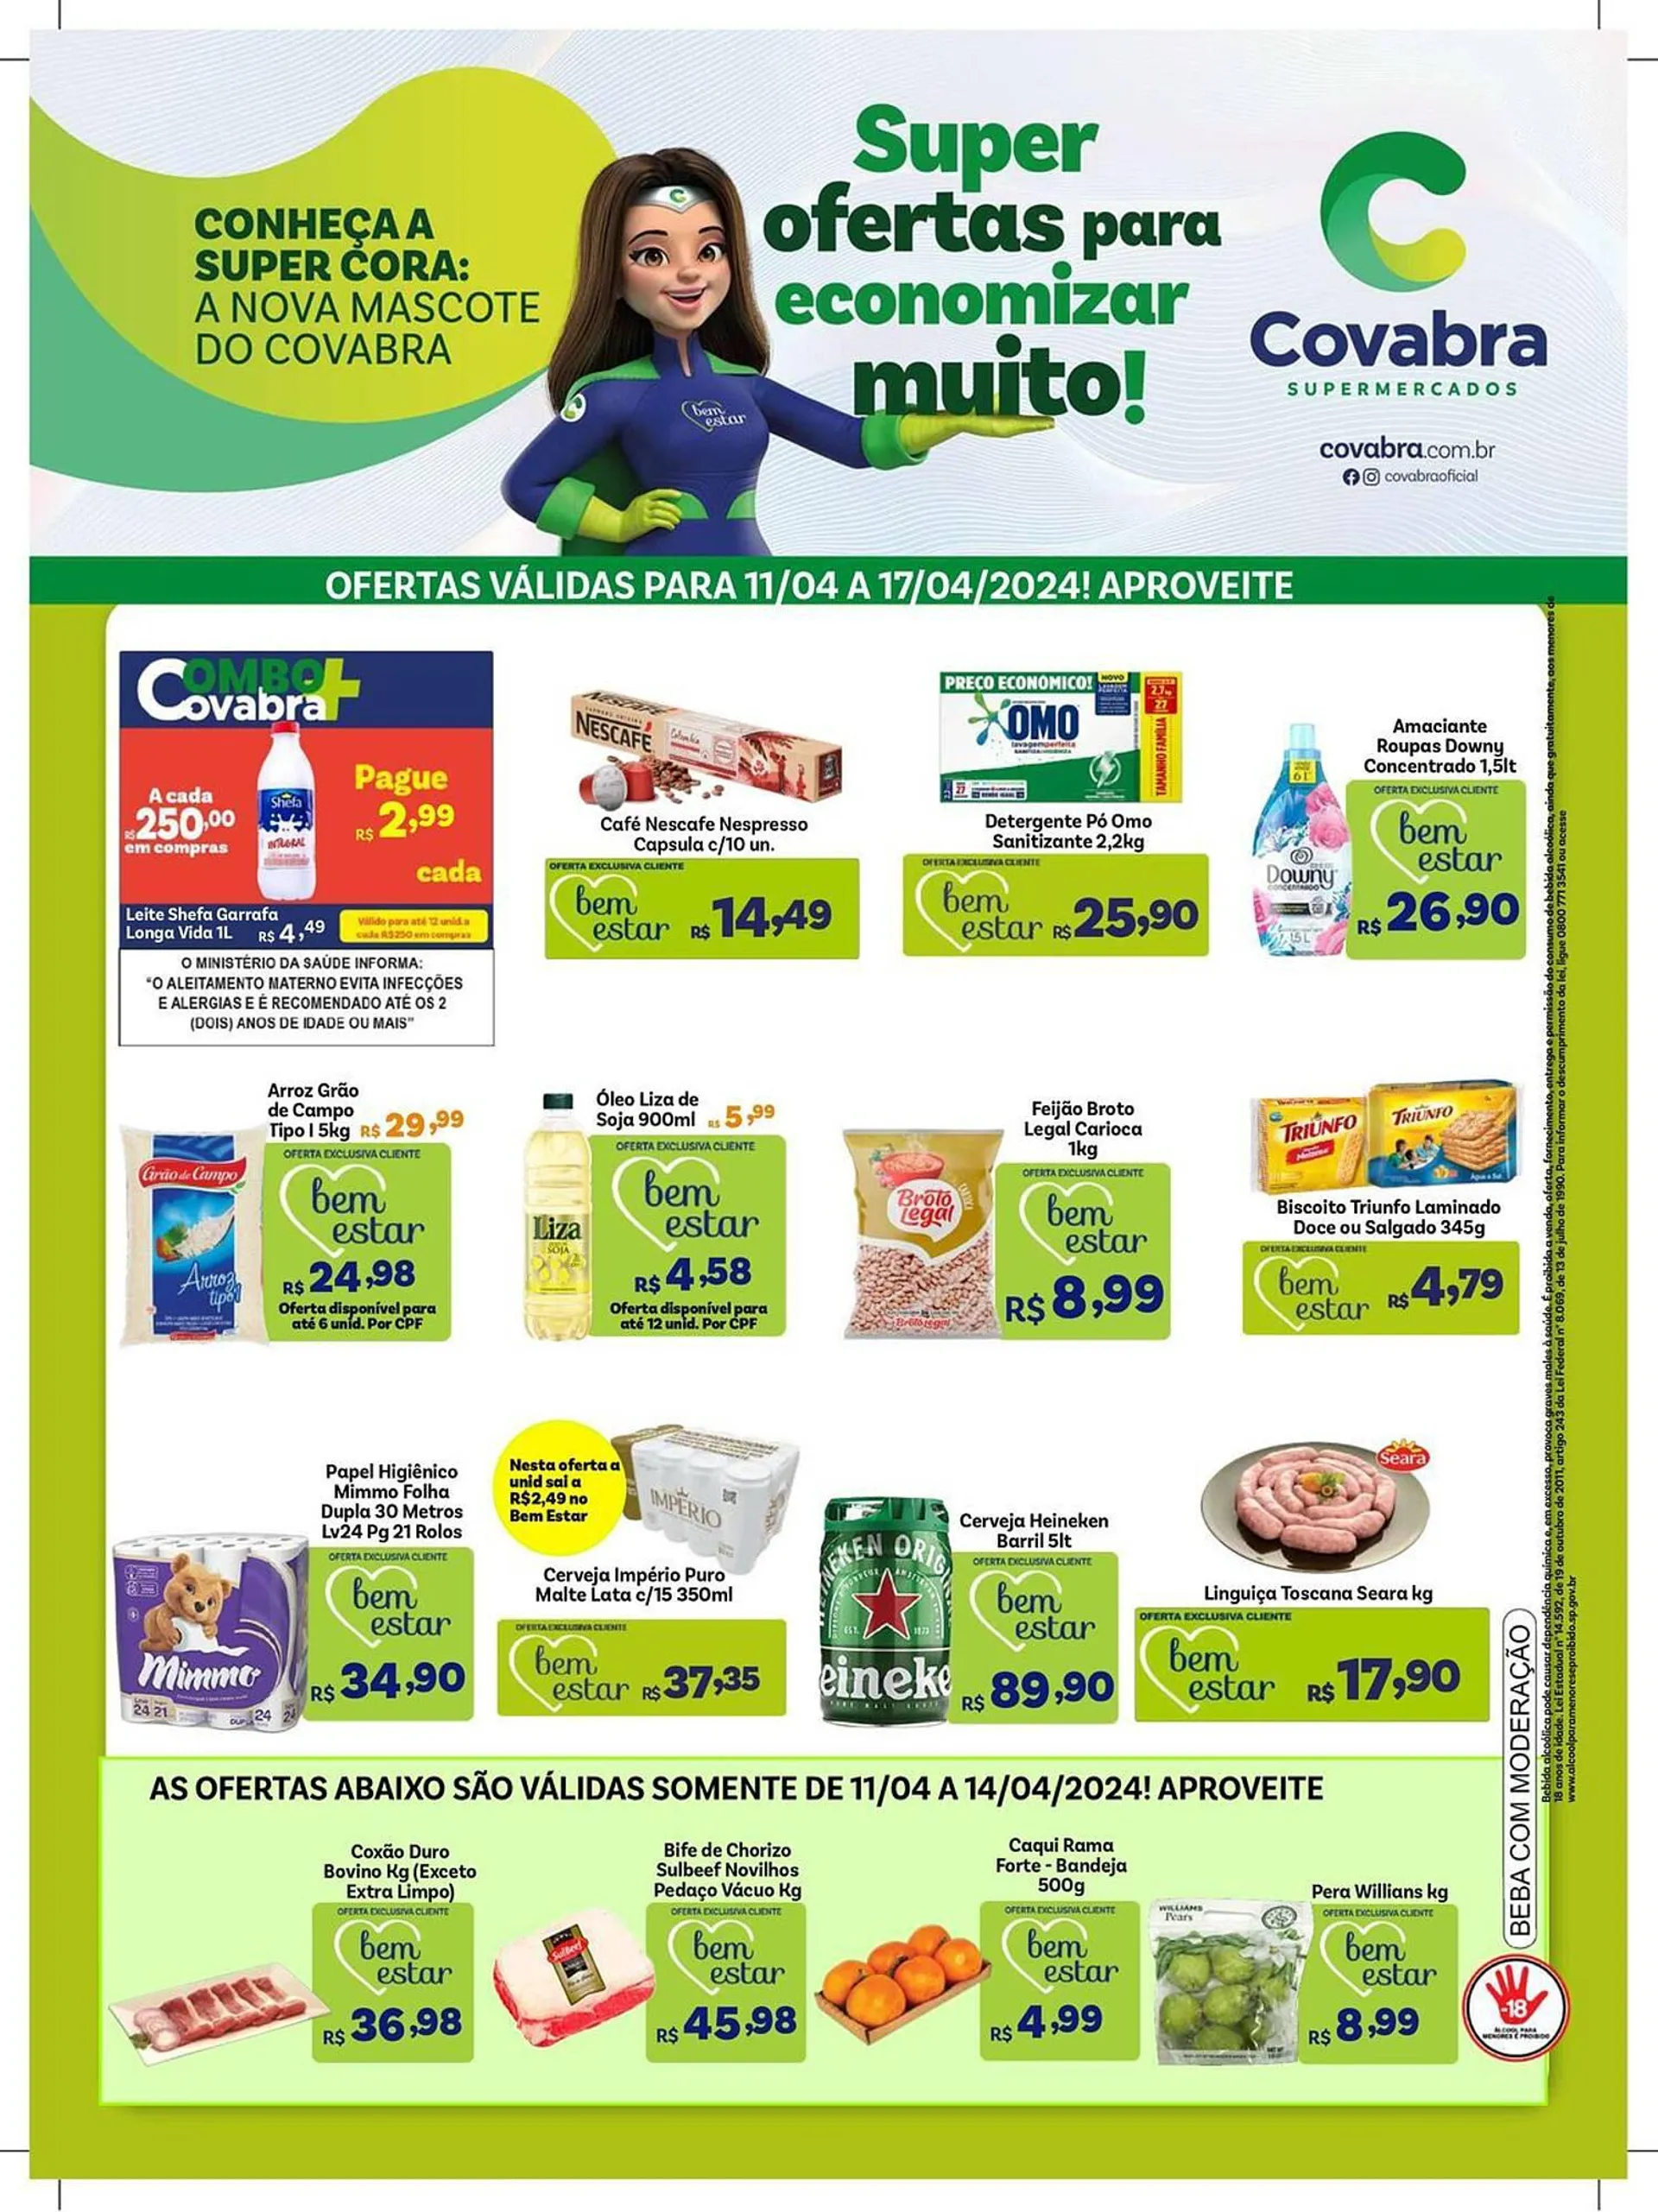 Encarte de Catálogo Covabra Supermercados 12 de abril até 17 de abril 2024 - Pagina 1